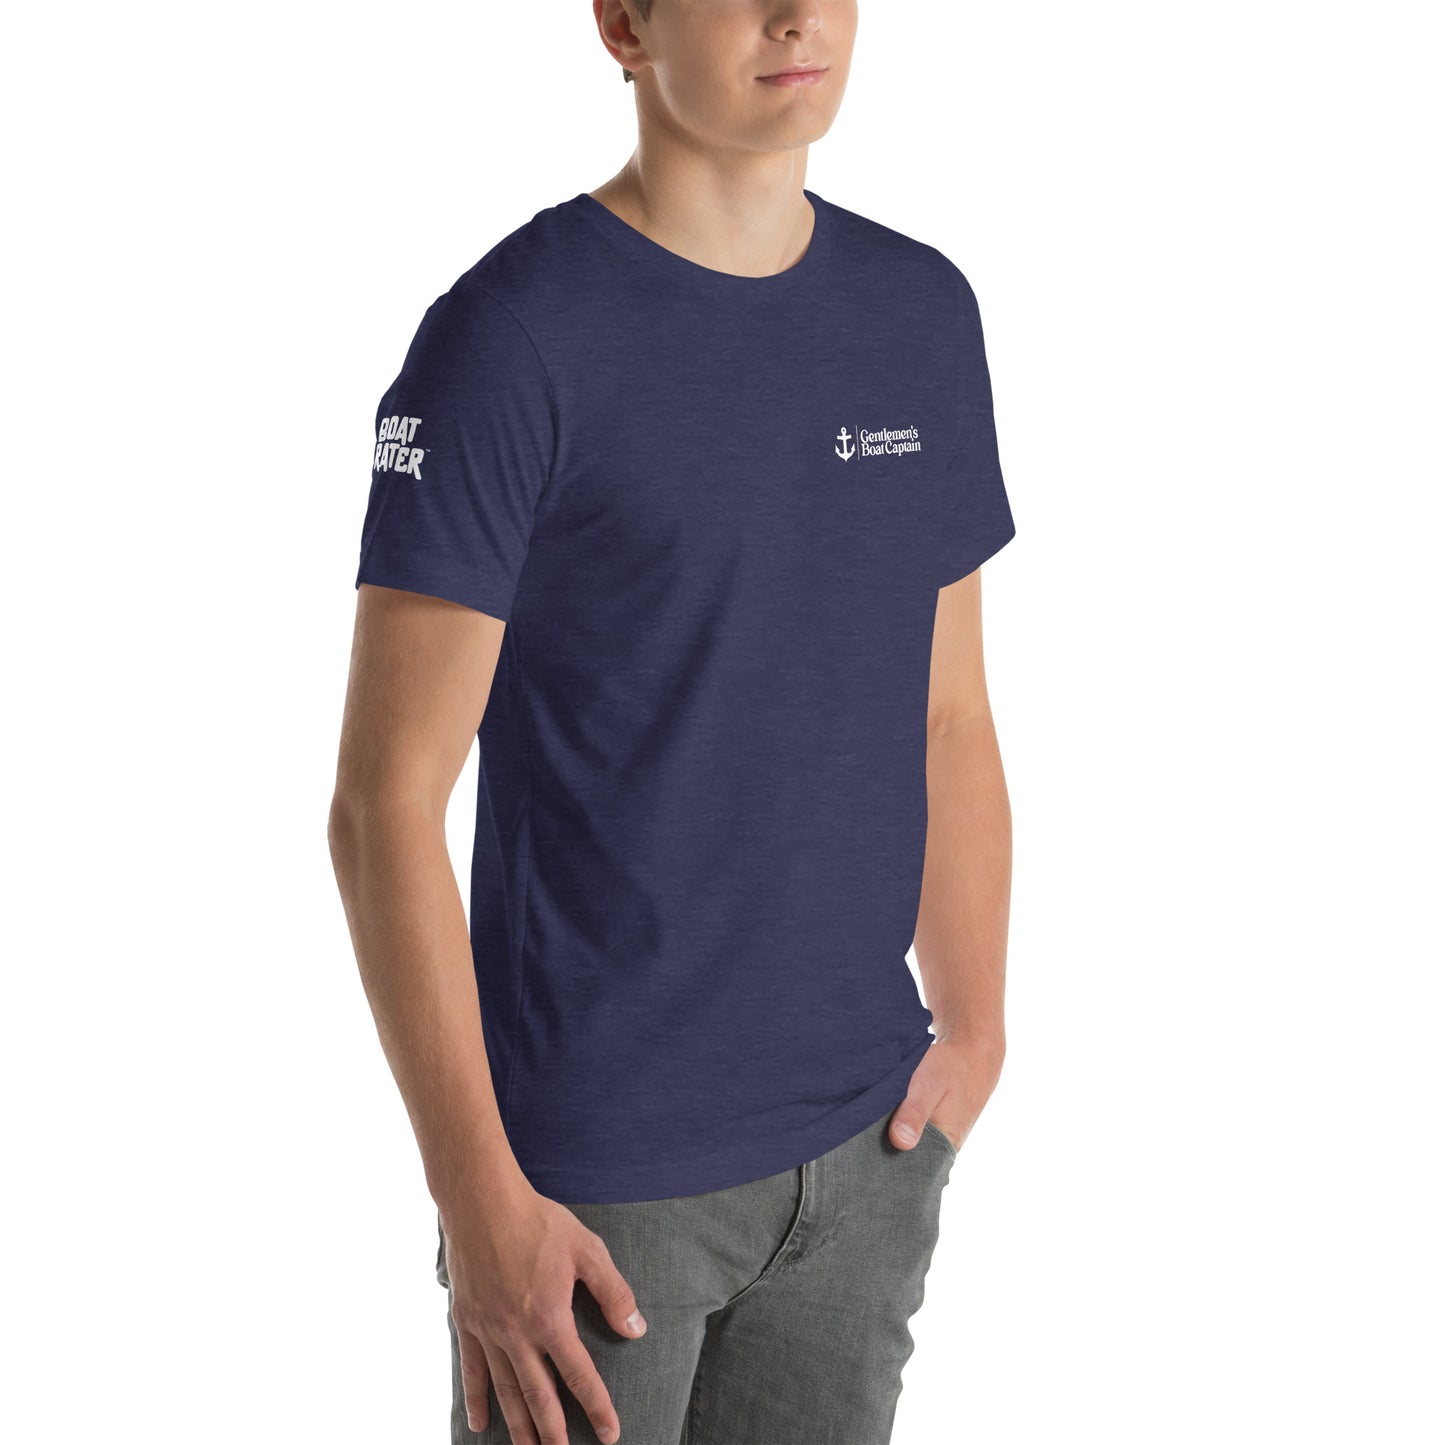 Gentlemen's Boat Captain Unisex t-shirt